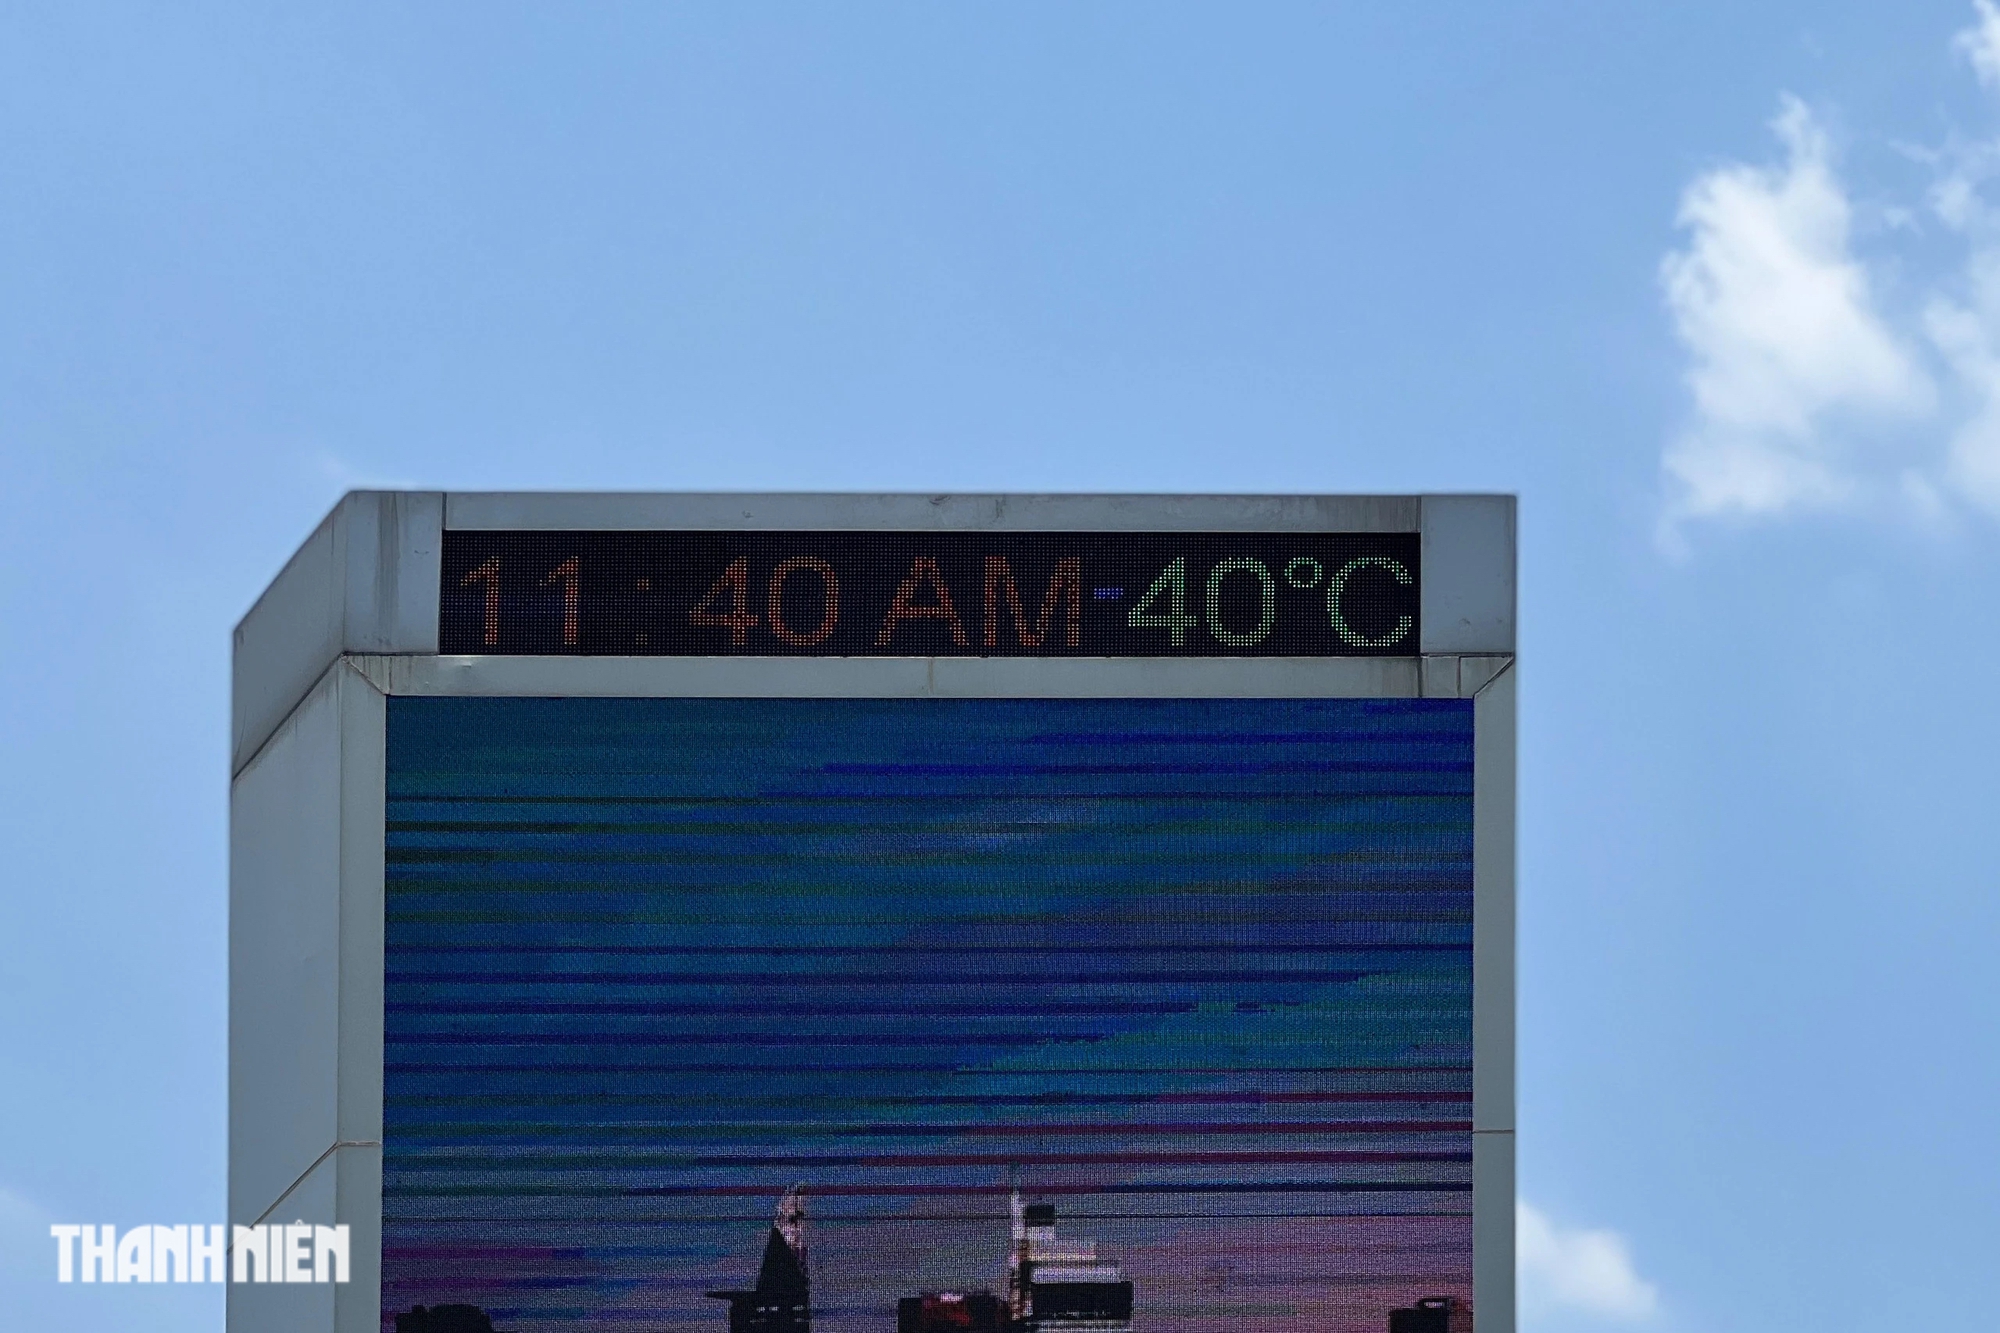 11 giờ 40 phút, ngày 11.4 tại ngã tư Hàng Xanh (Q.Bình Thạnh), bảng đo nhiệt ghi nhận 40 độ C.